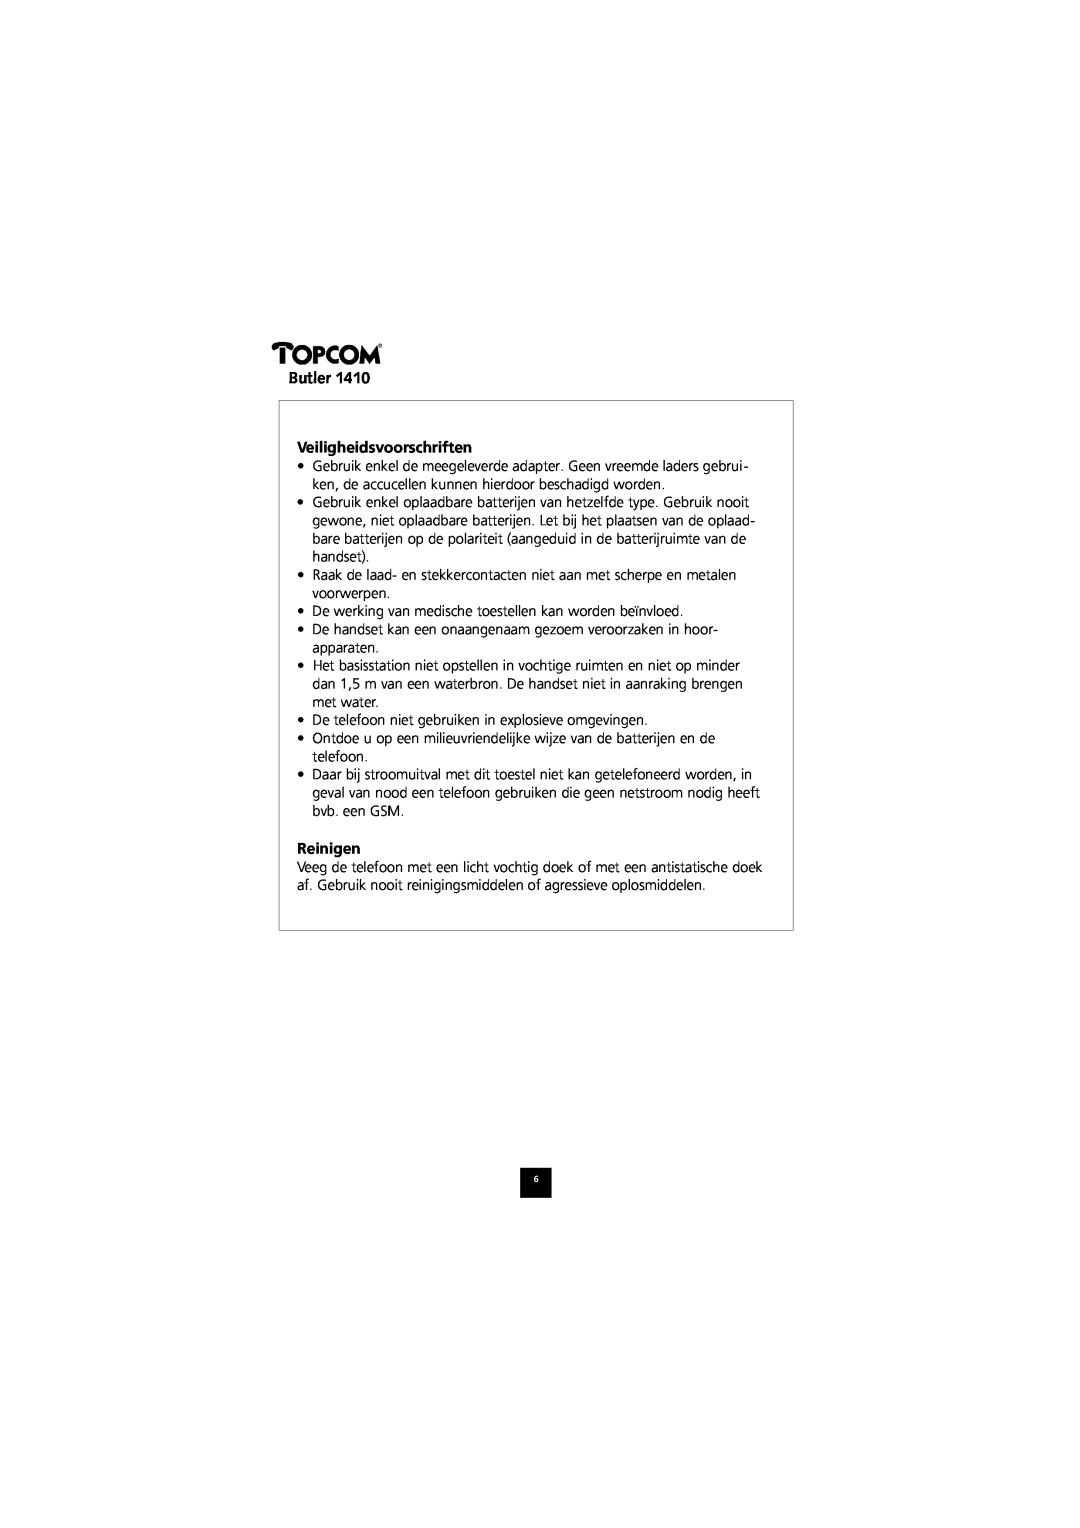 Topcom 1410 manual Veiligheidsvoorschriften, Reinigen, Butler 